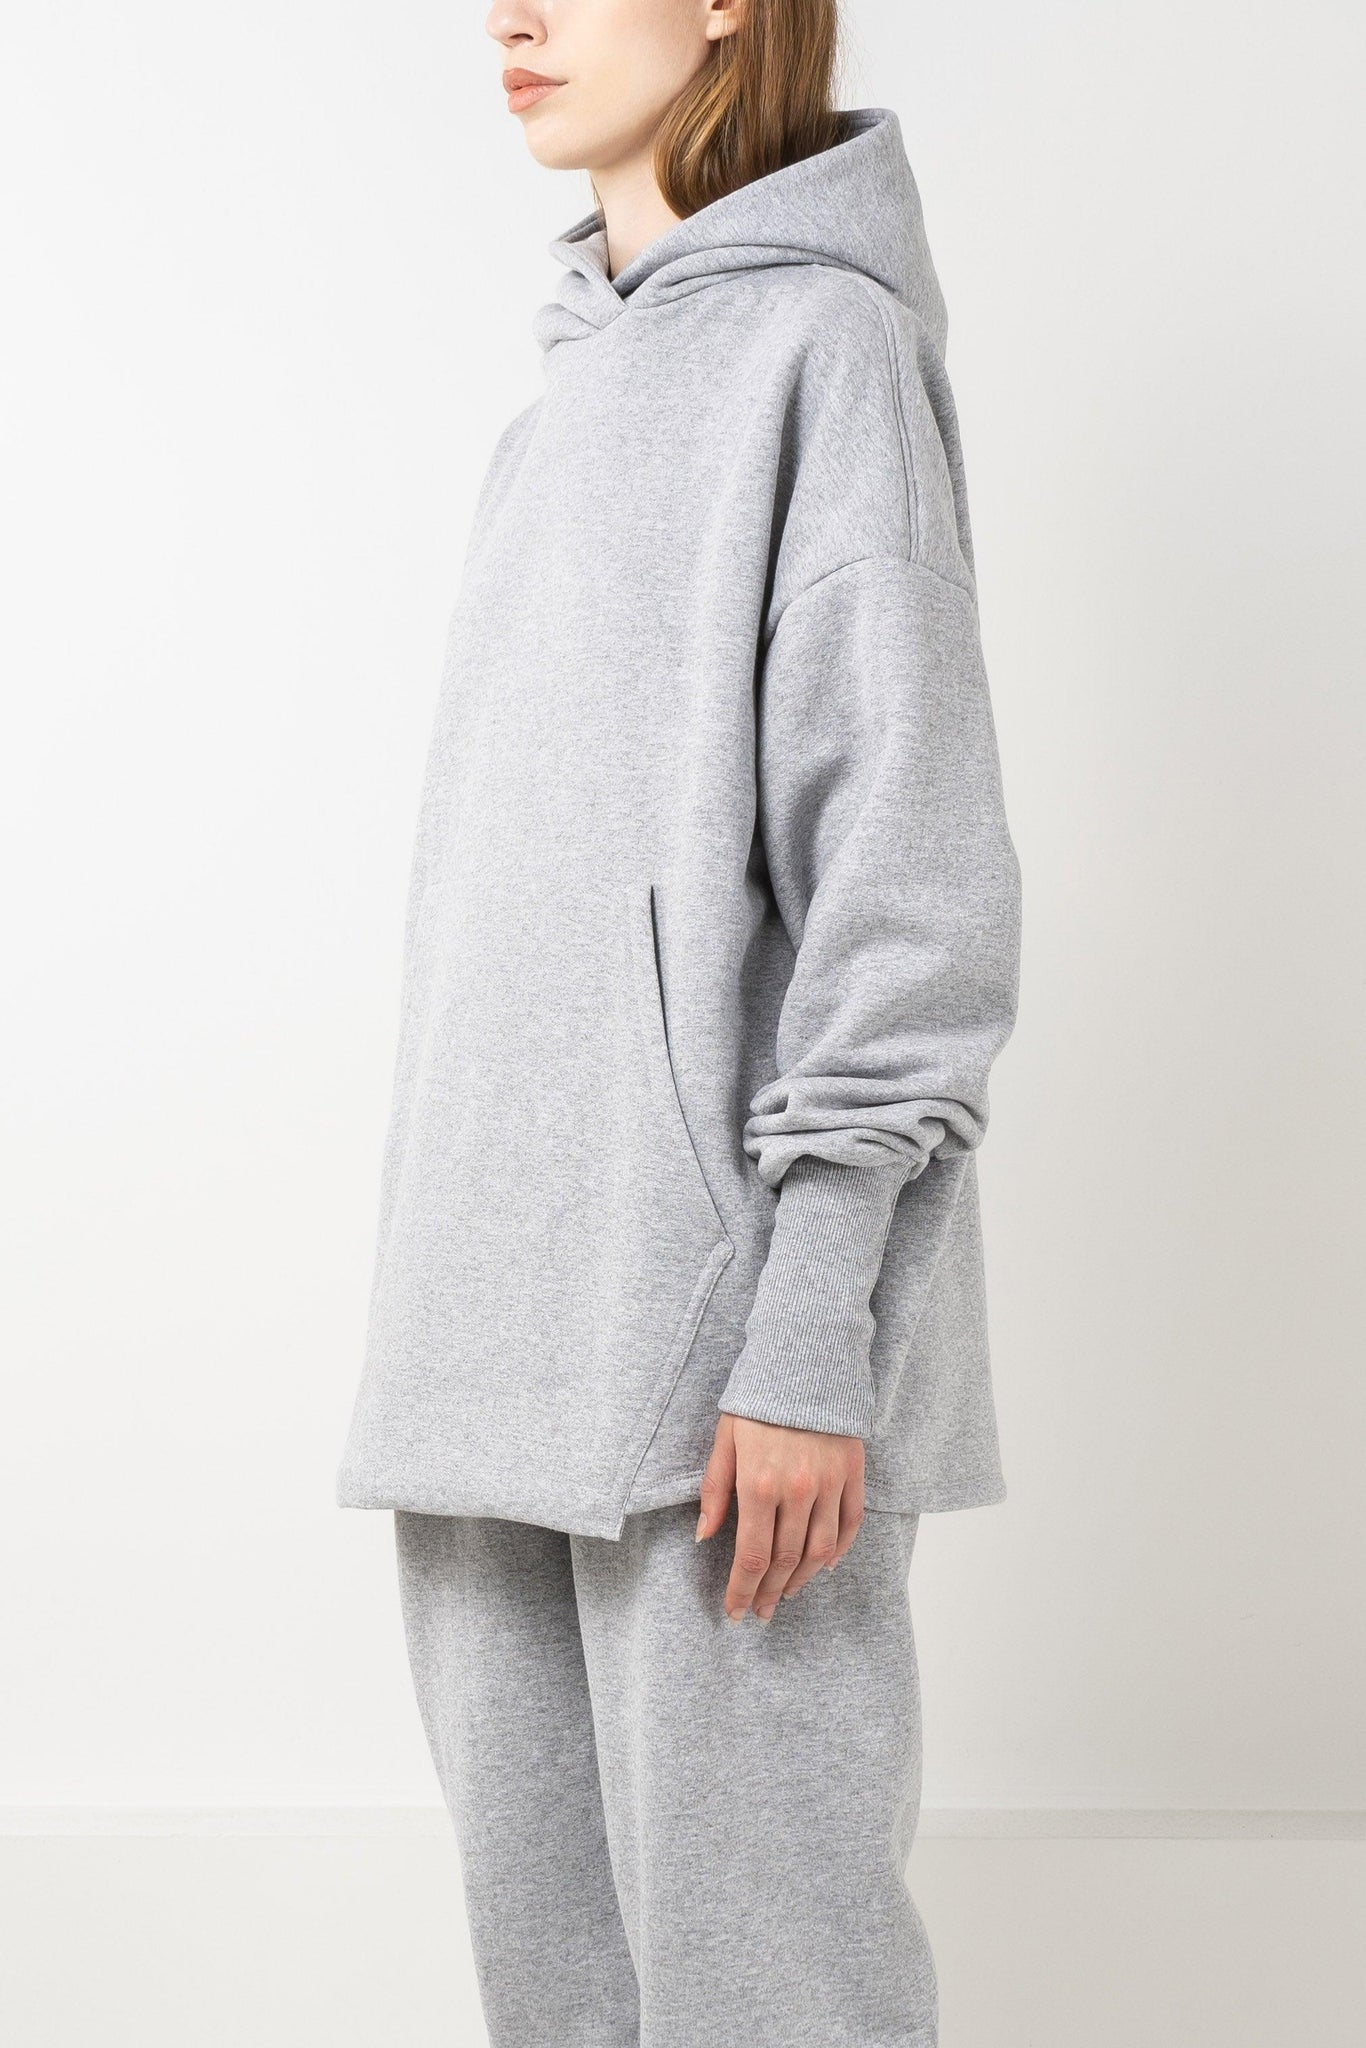 Oversized grey fleece hoodie with drop shoulders and double layered hood.